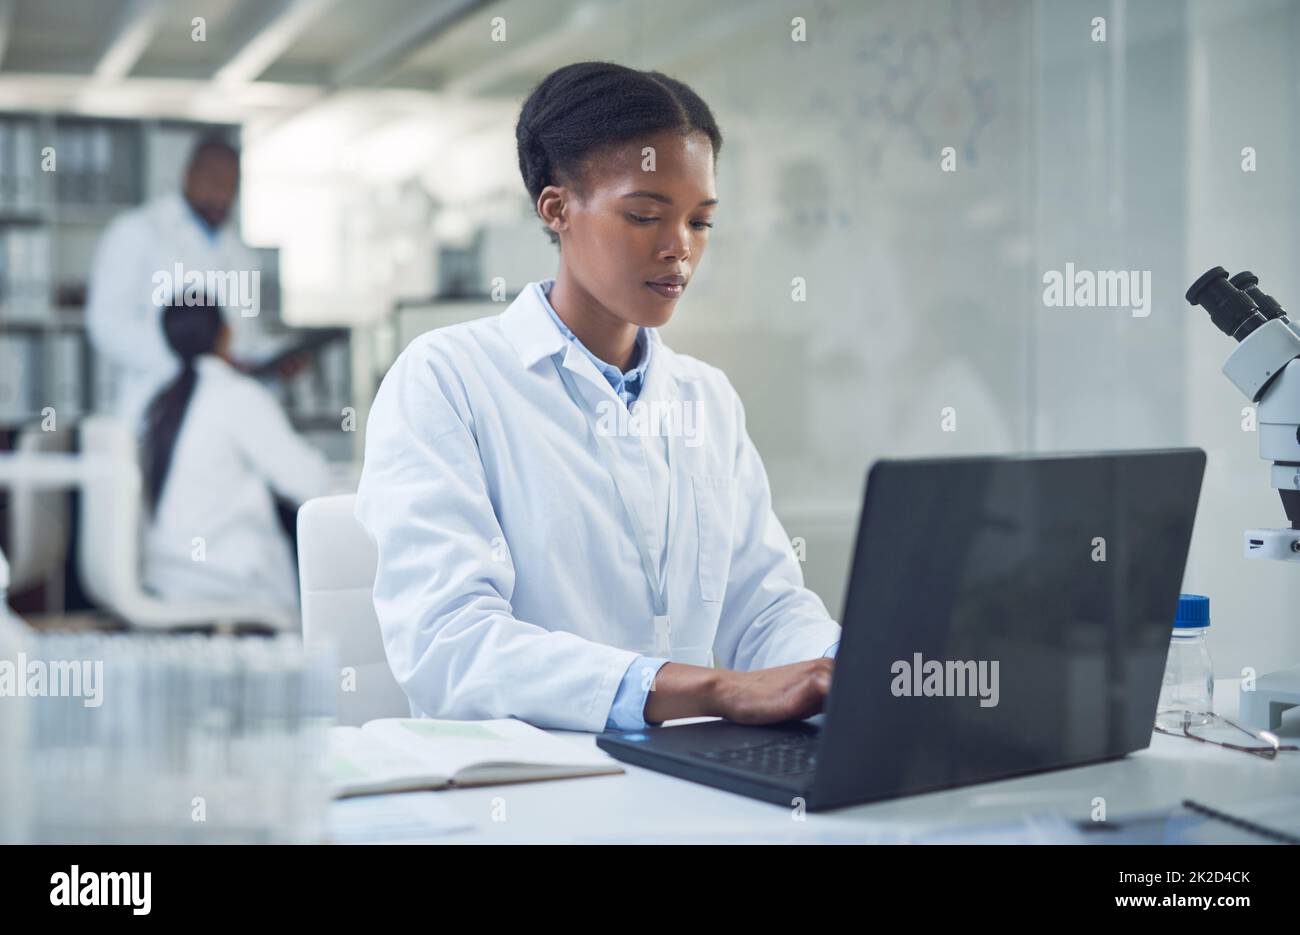 Plus elle travaille fort, plus la guérison est proche. Photo d'un jeune scientifique utilisant un ordinateur portable tout en effectuant des recherches dans un laboratoire. Banque D'Images